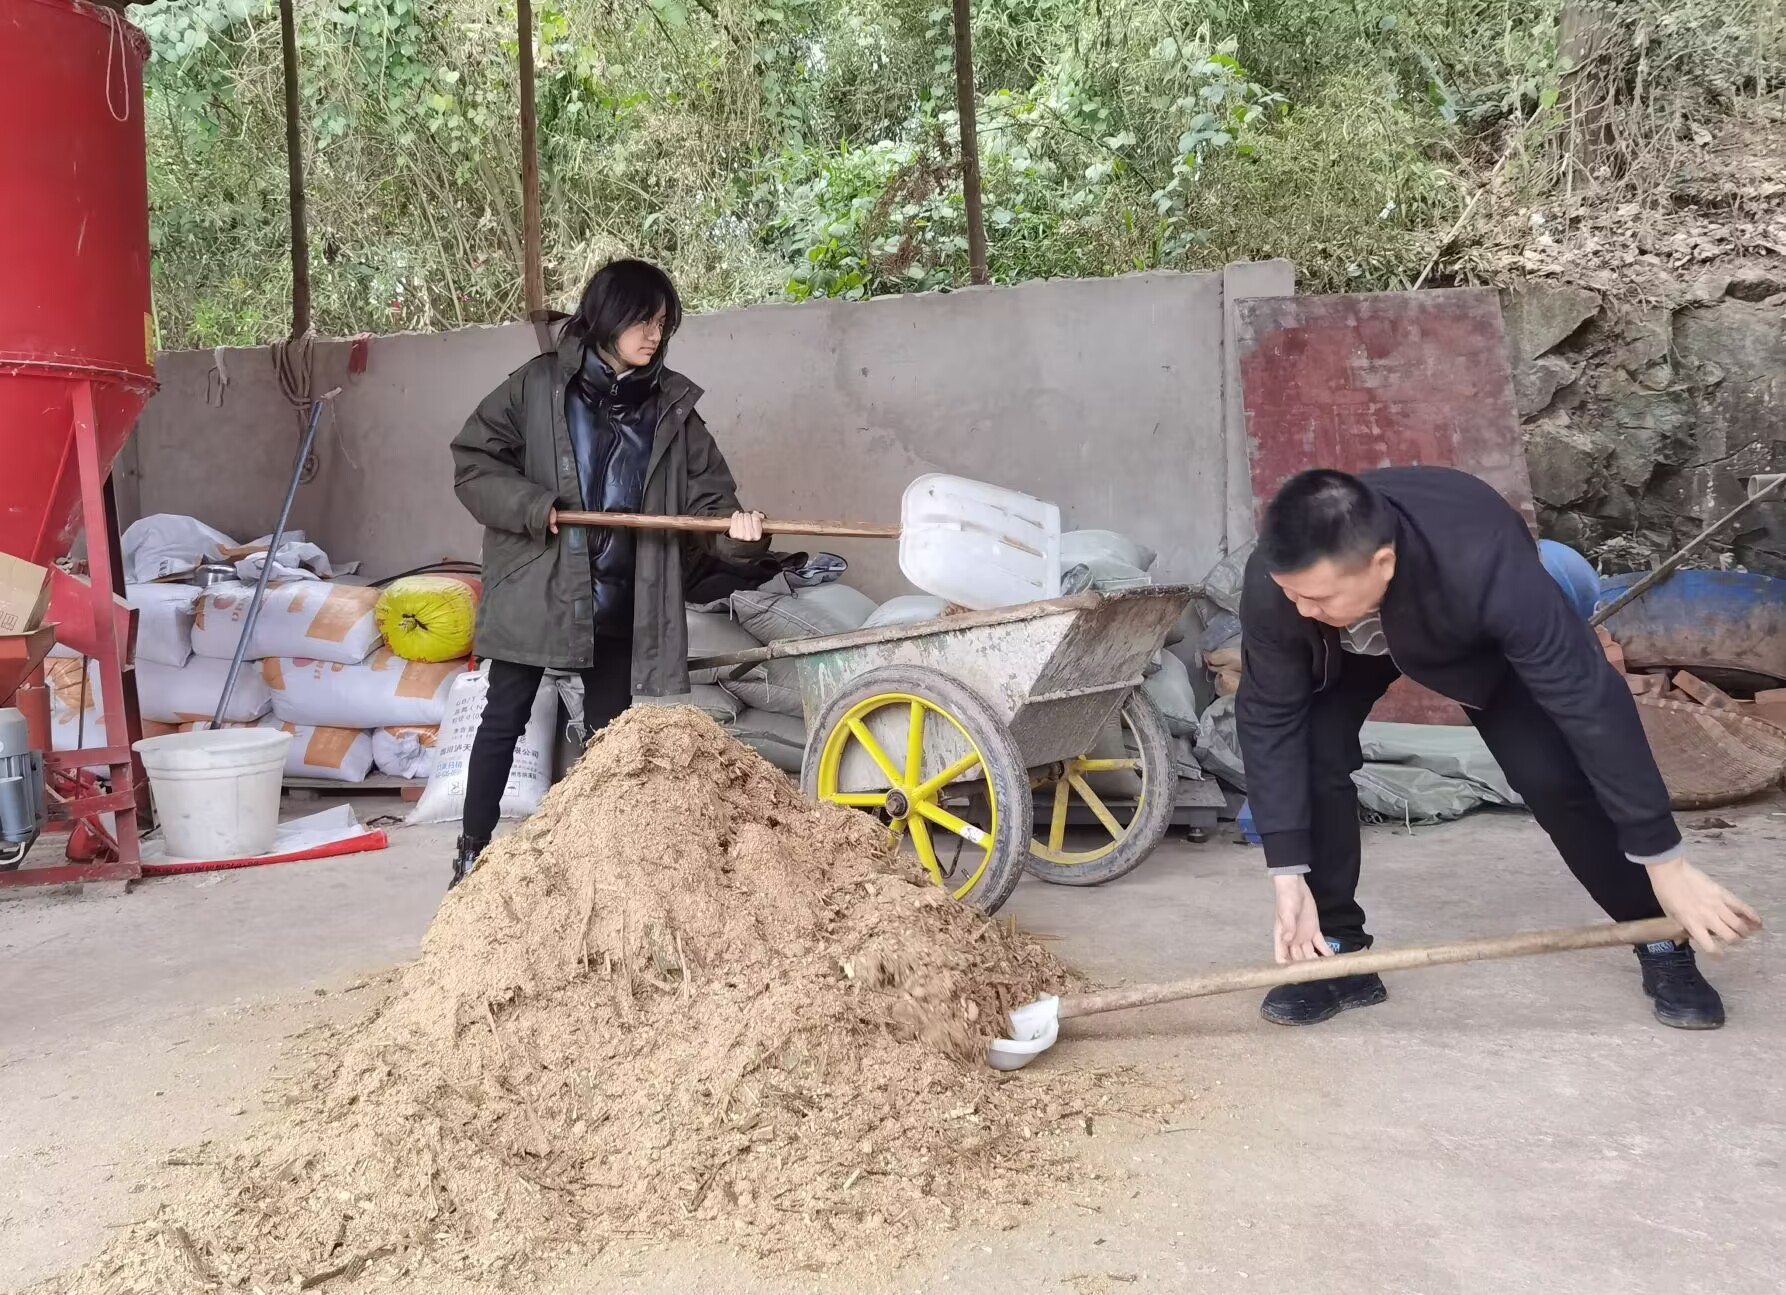 团队成员与工作人员一起清理草料 王哲恩 摄